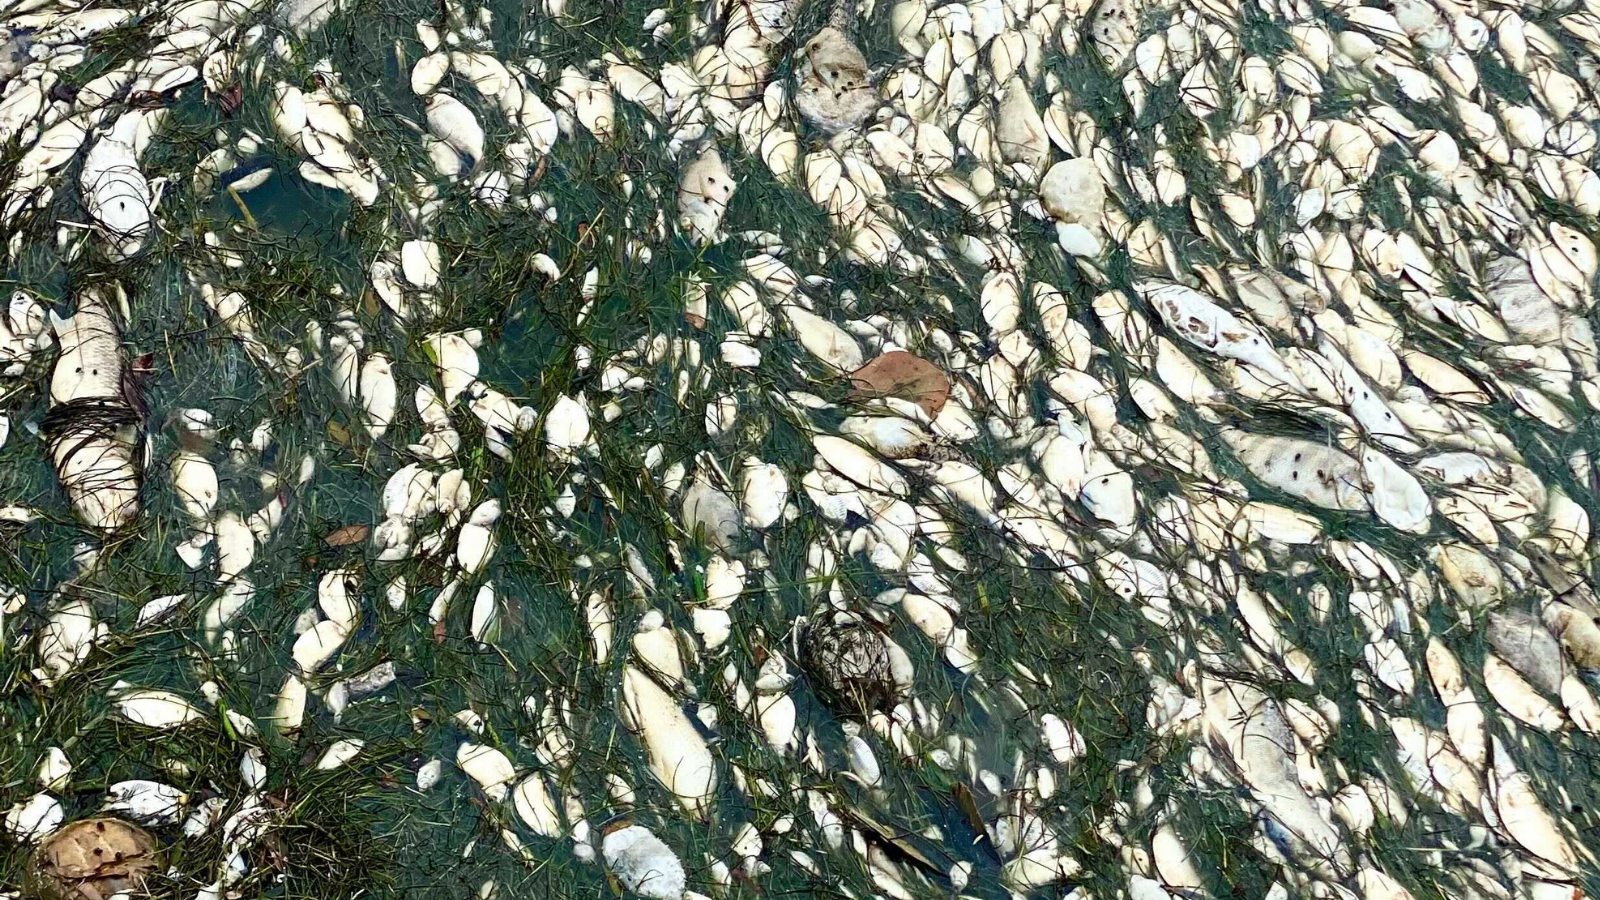 Bangkai ikan di sepanjang pantai Taman Straub Utara di pusat kota St. Petersburg, Florida, pada 15 Juli 2021. (Foto oleh Hailey Vaughan)